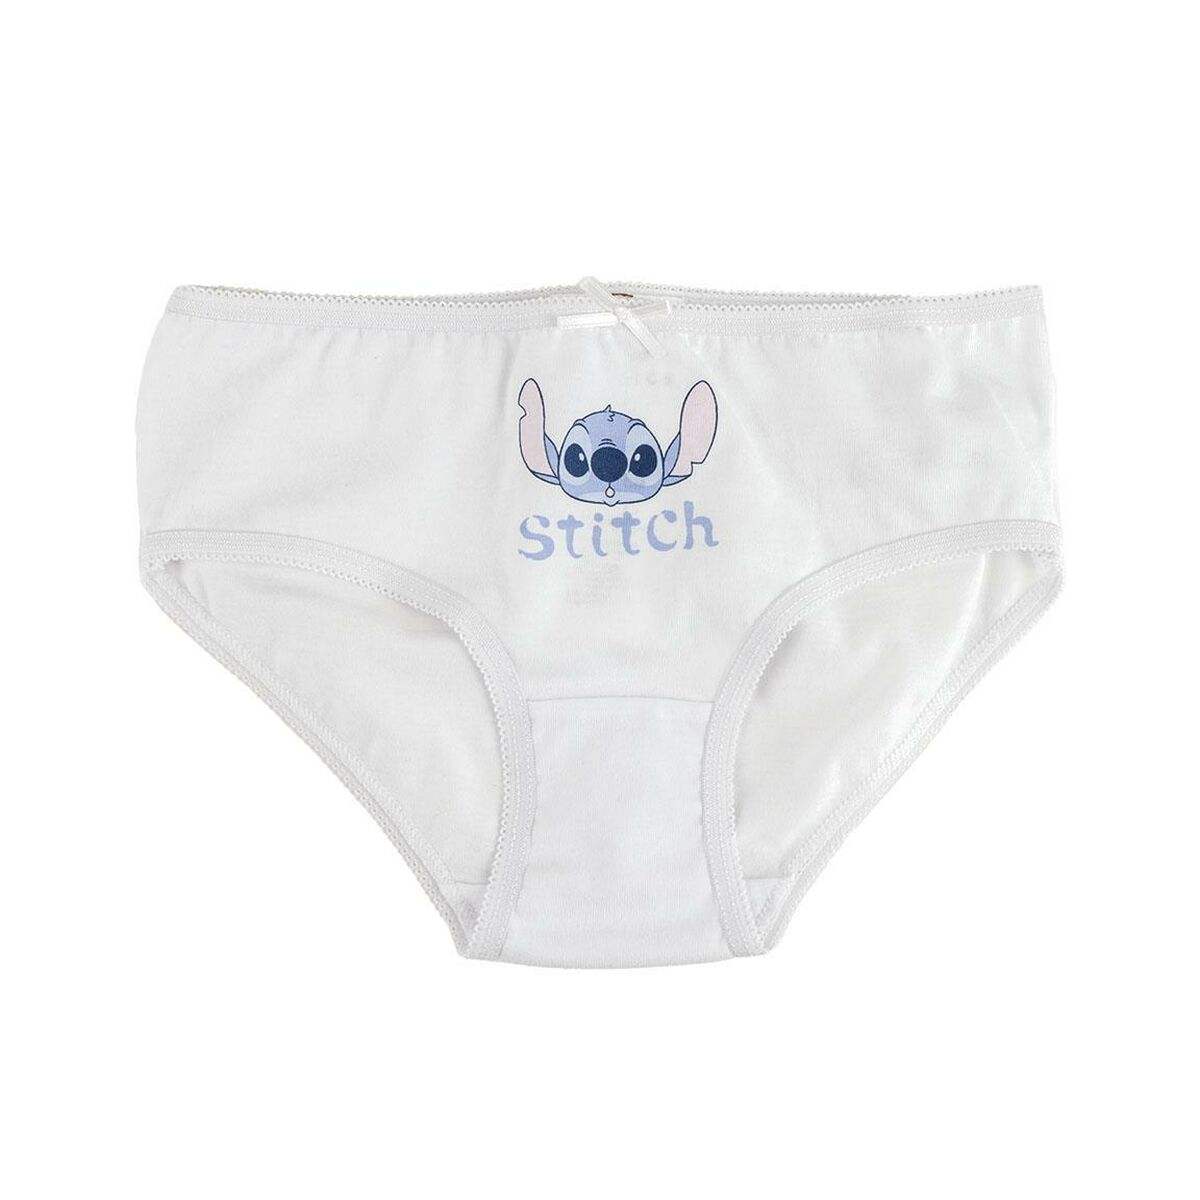 Unterhosen-Packung für Mädchen Stitch 3 Stücke Bunt